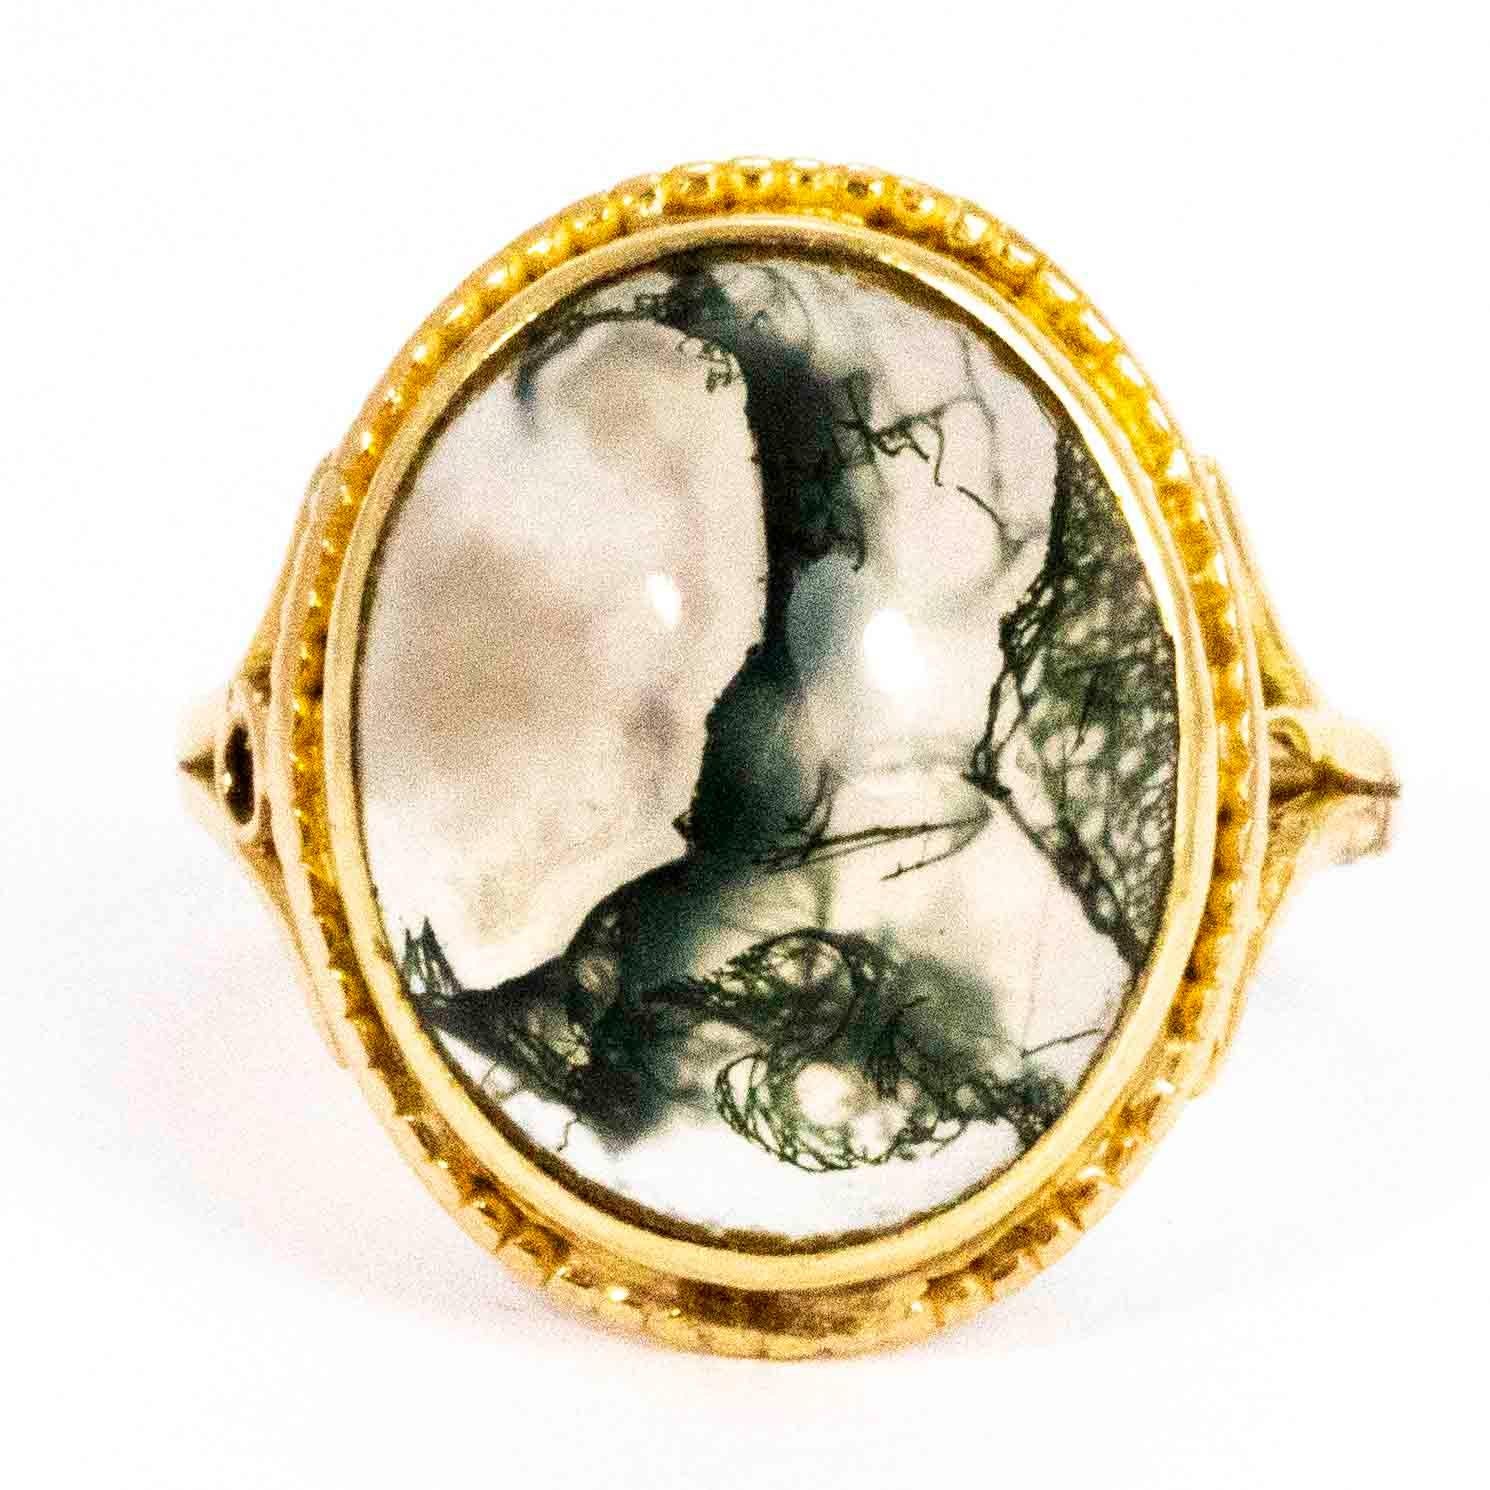 Ein schöner Vintage-Ring, besetzt mit einem großen Moosachat im Cabochon-Schliff. Der Achat hat eine wunderbare, komplizierte Färbung, die sich aus jedem Blickwinkel verändert. Der Stein ist von einer prächtigen Wellenbordüre umgeben und zwischen